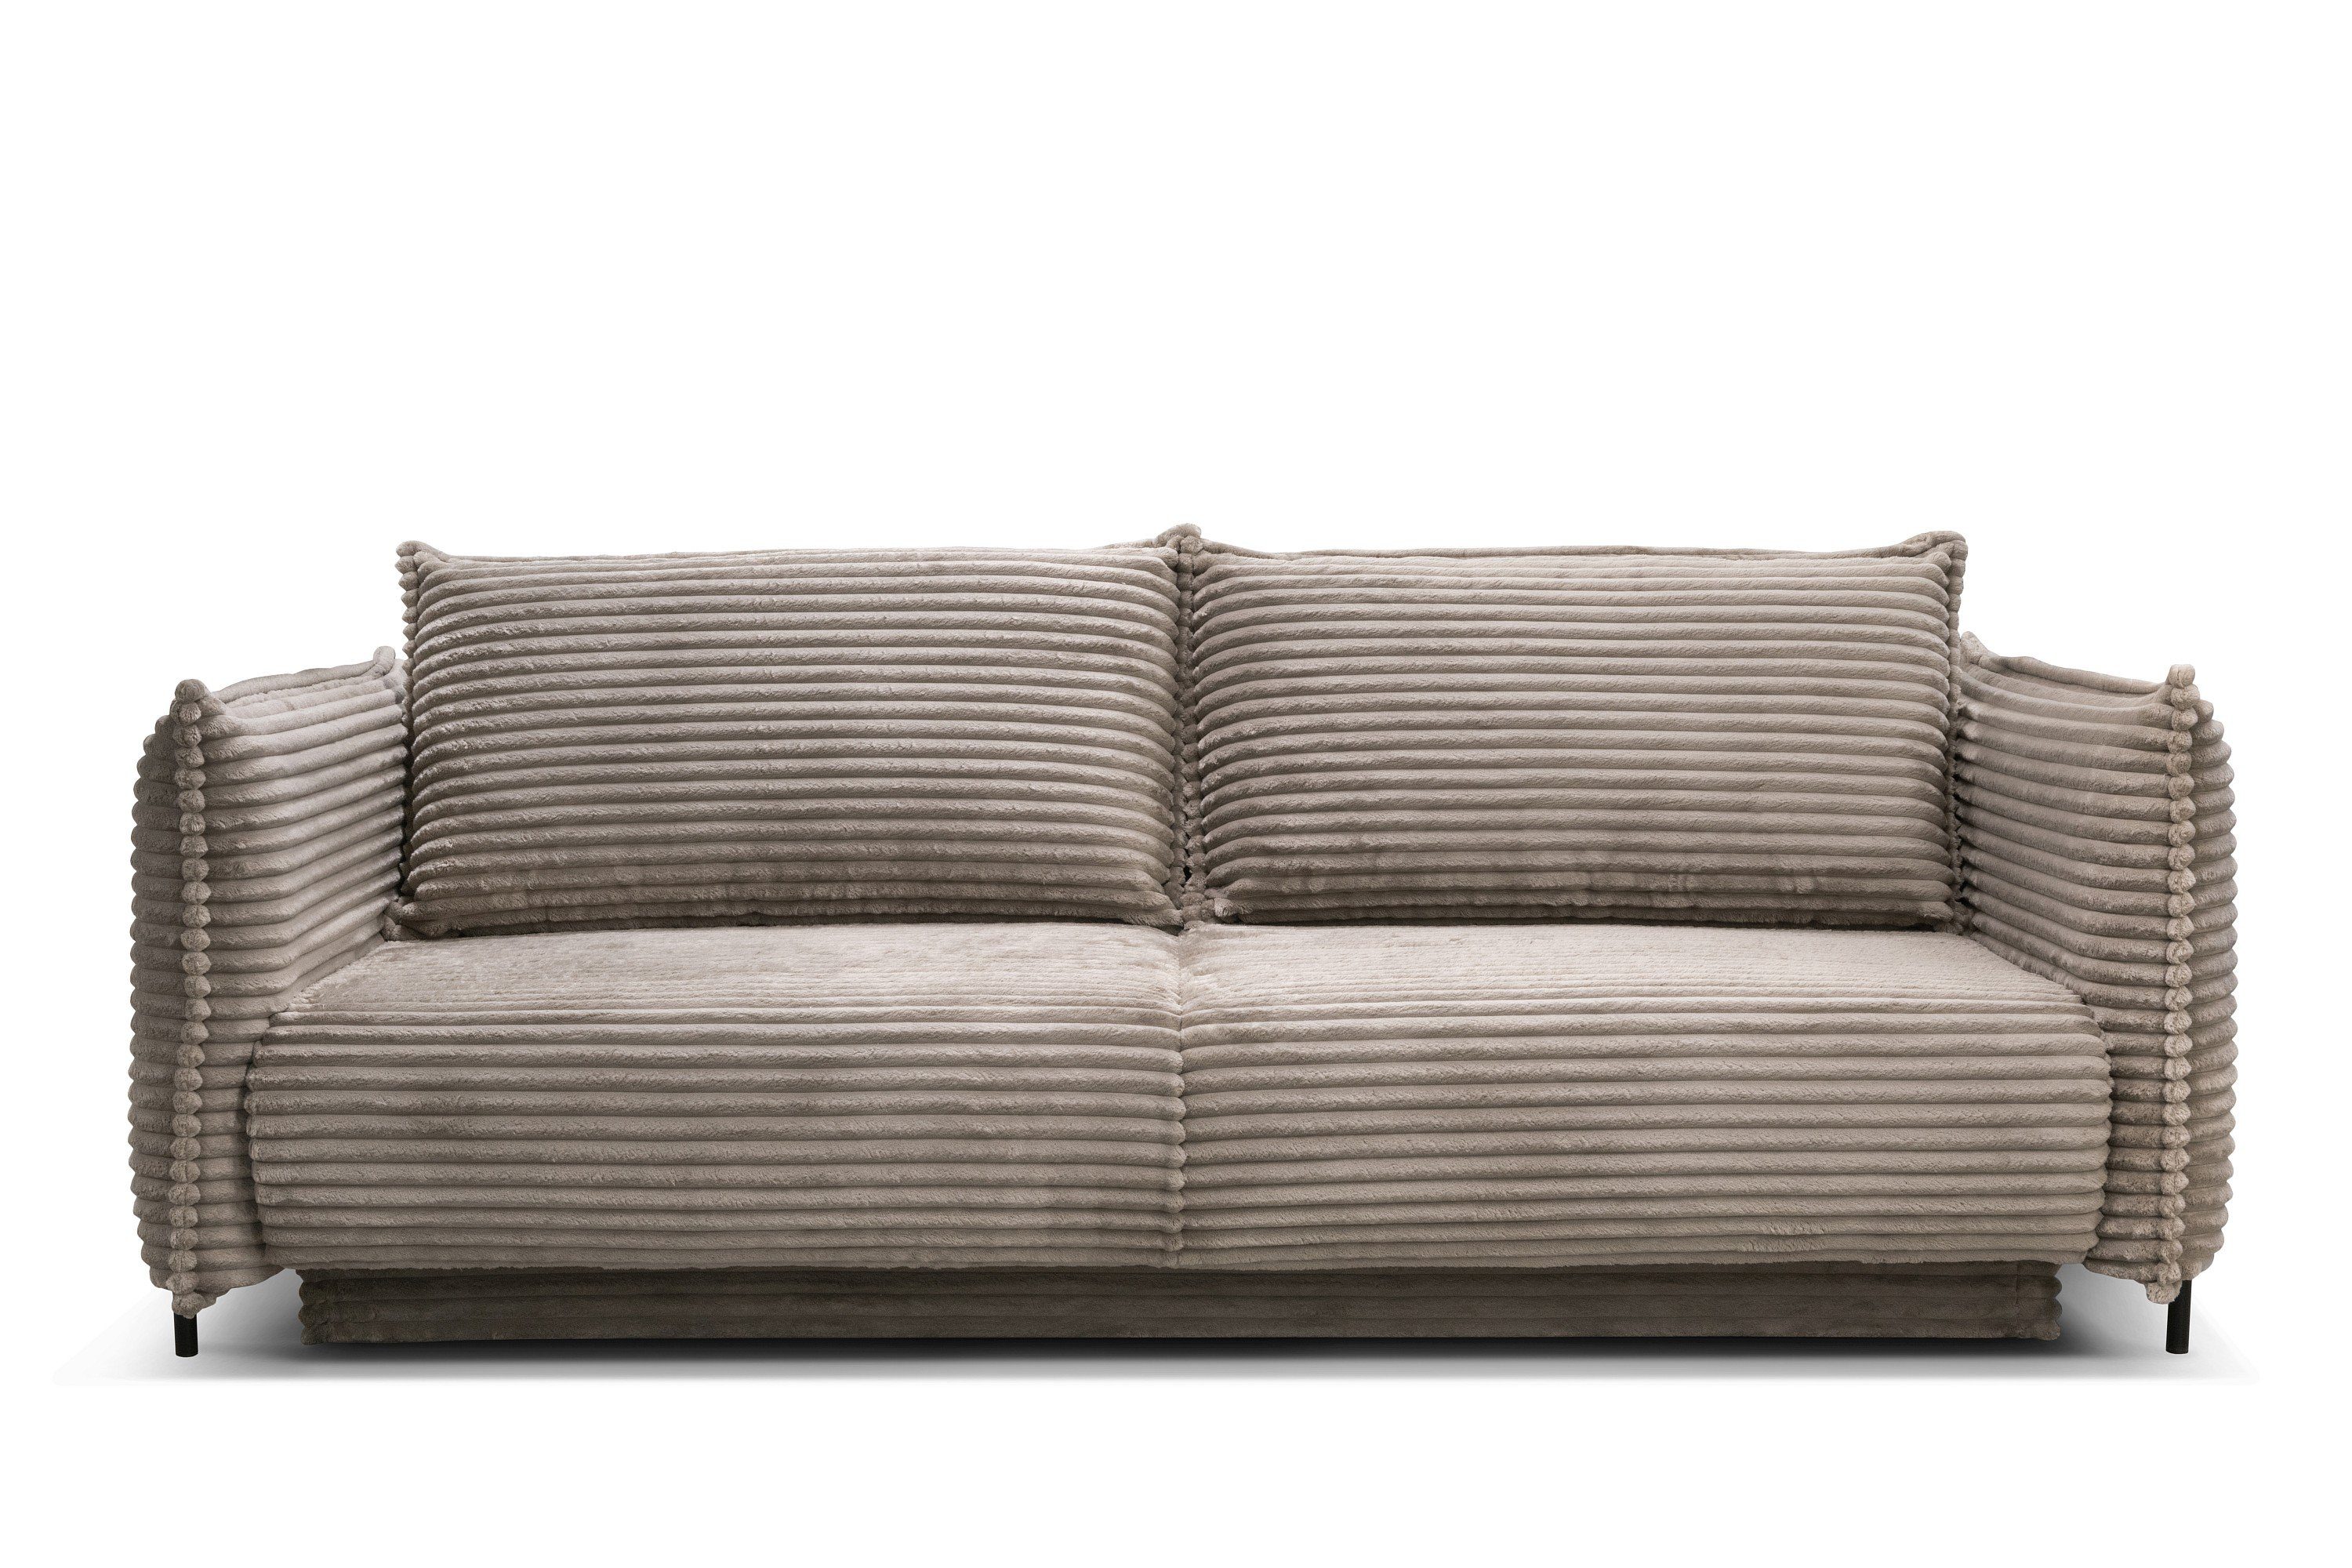 Möbel für Dich Sofa Bettsofa Amalfi mit Cord bezogen sowie mit Bettkasten und Farbauswahl, Cordbezug mega-3-taupe